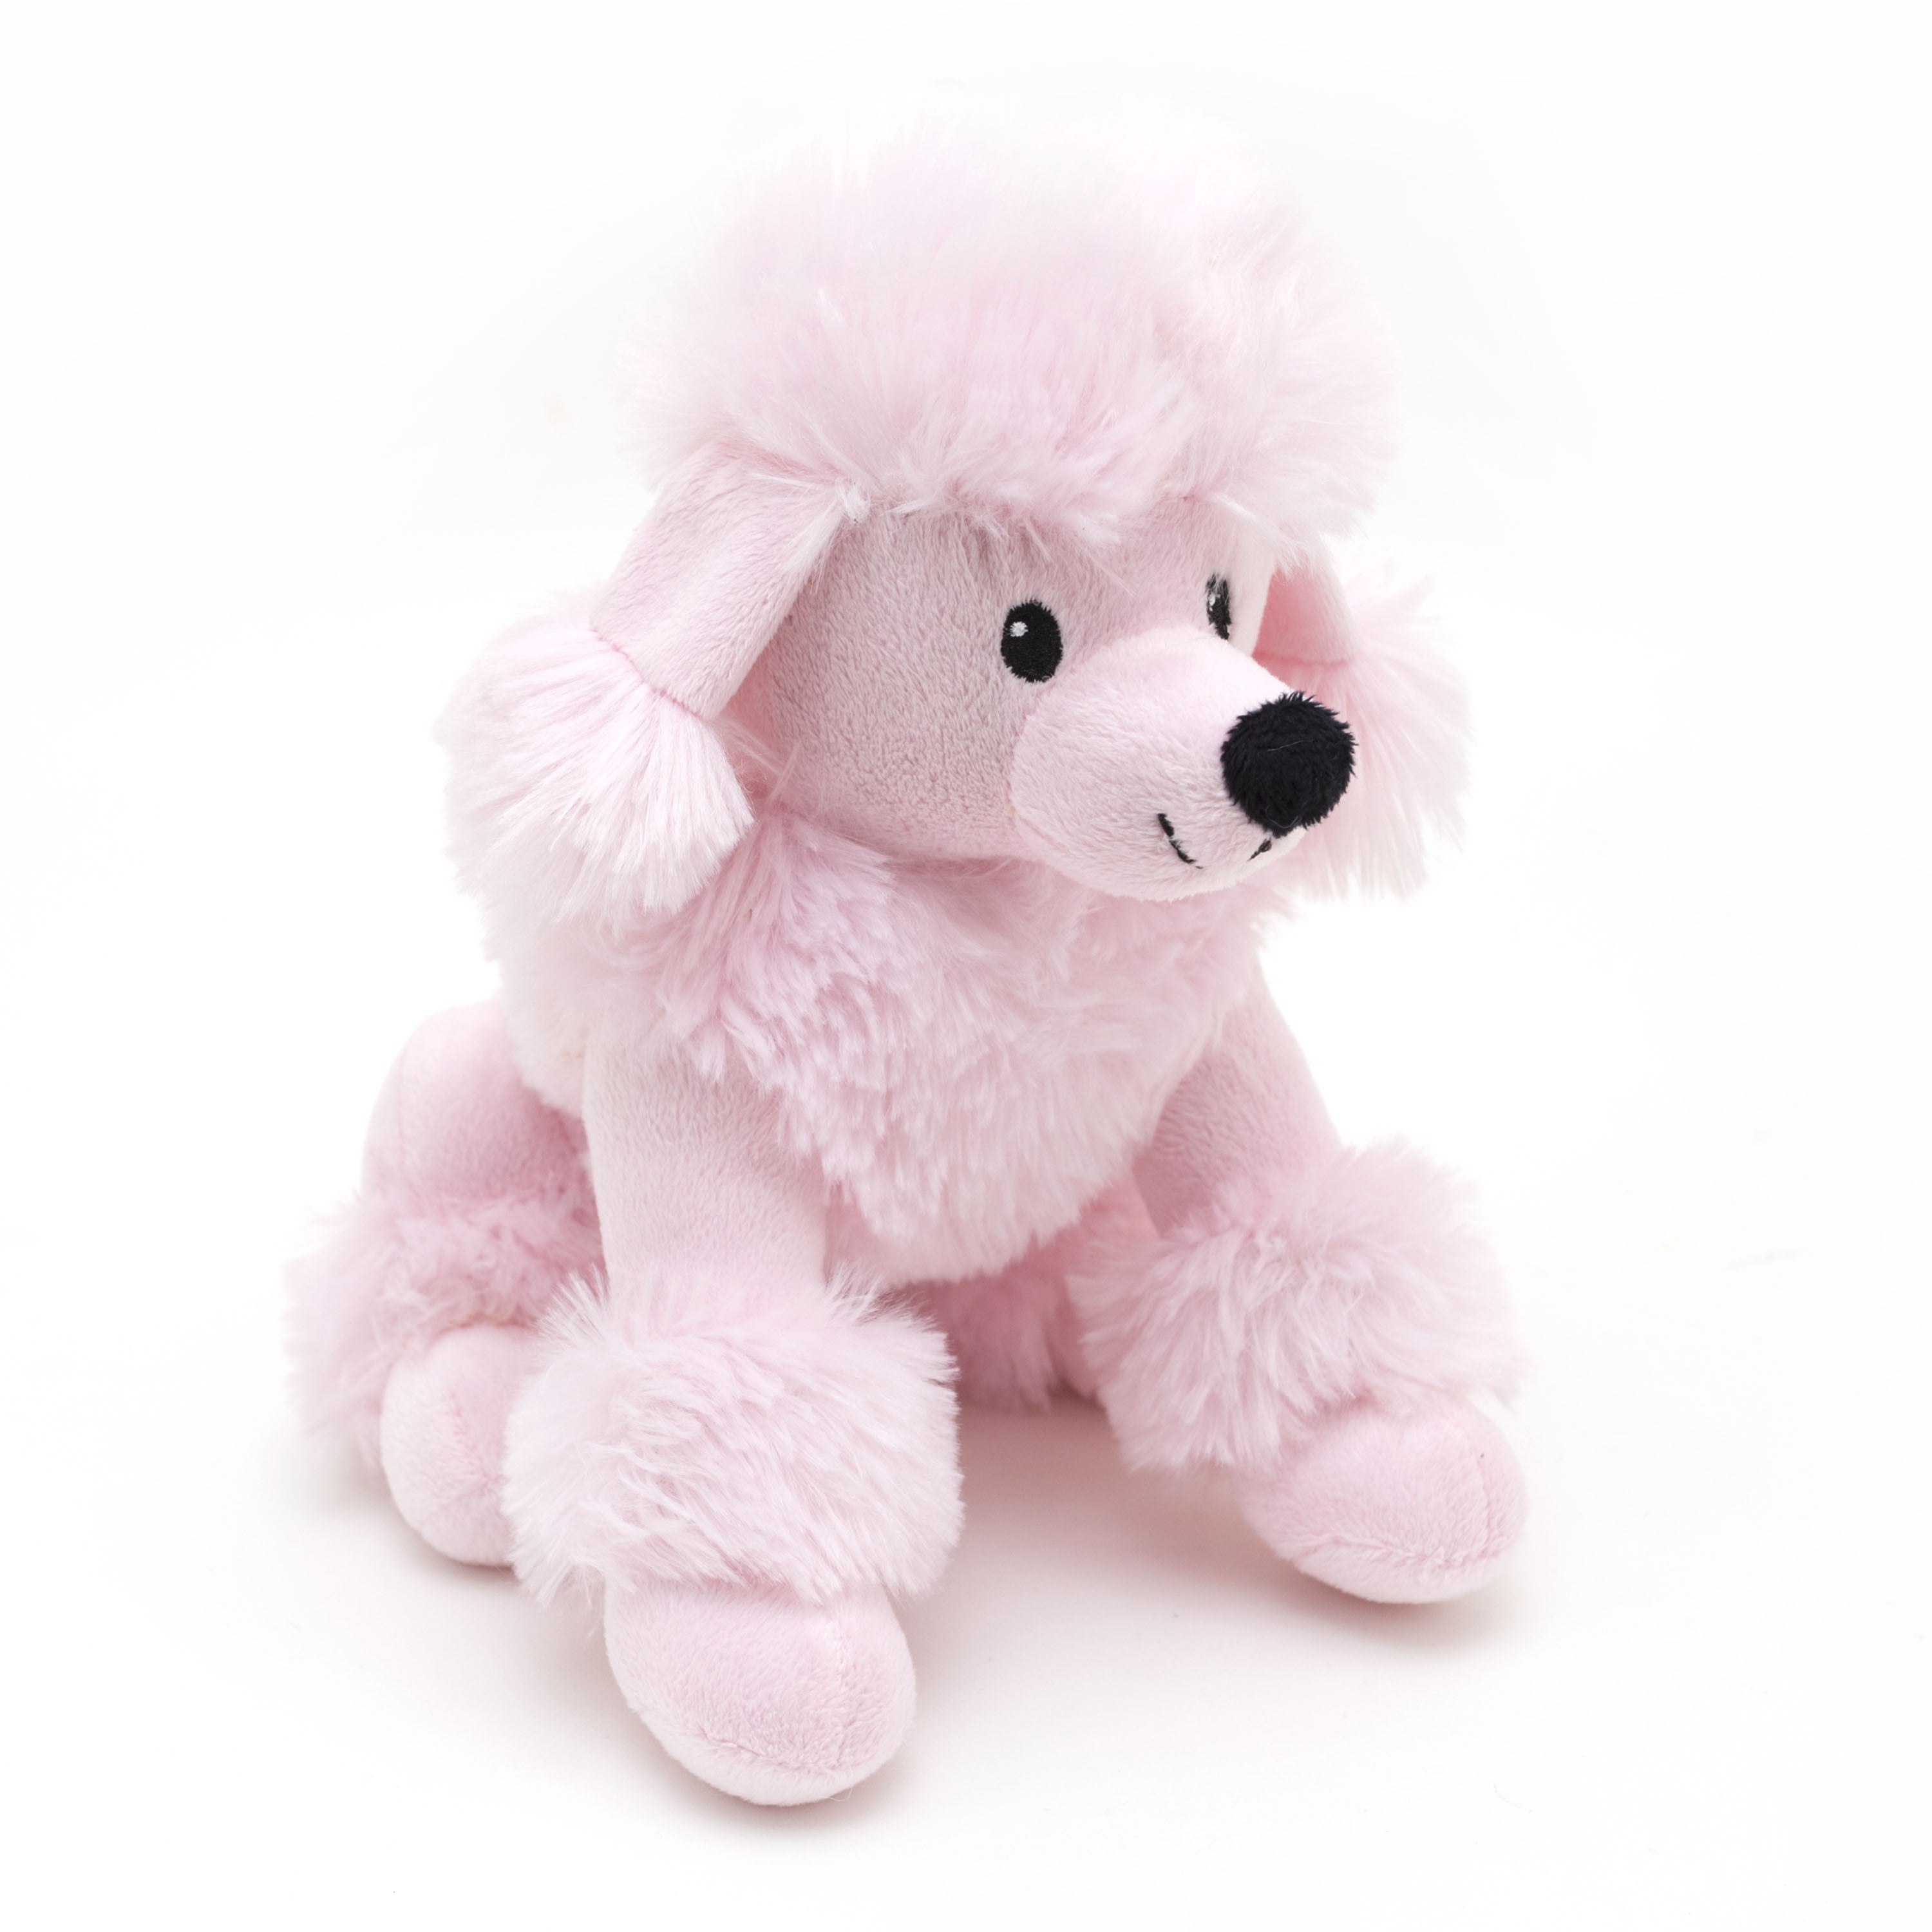 pink plush toy